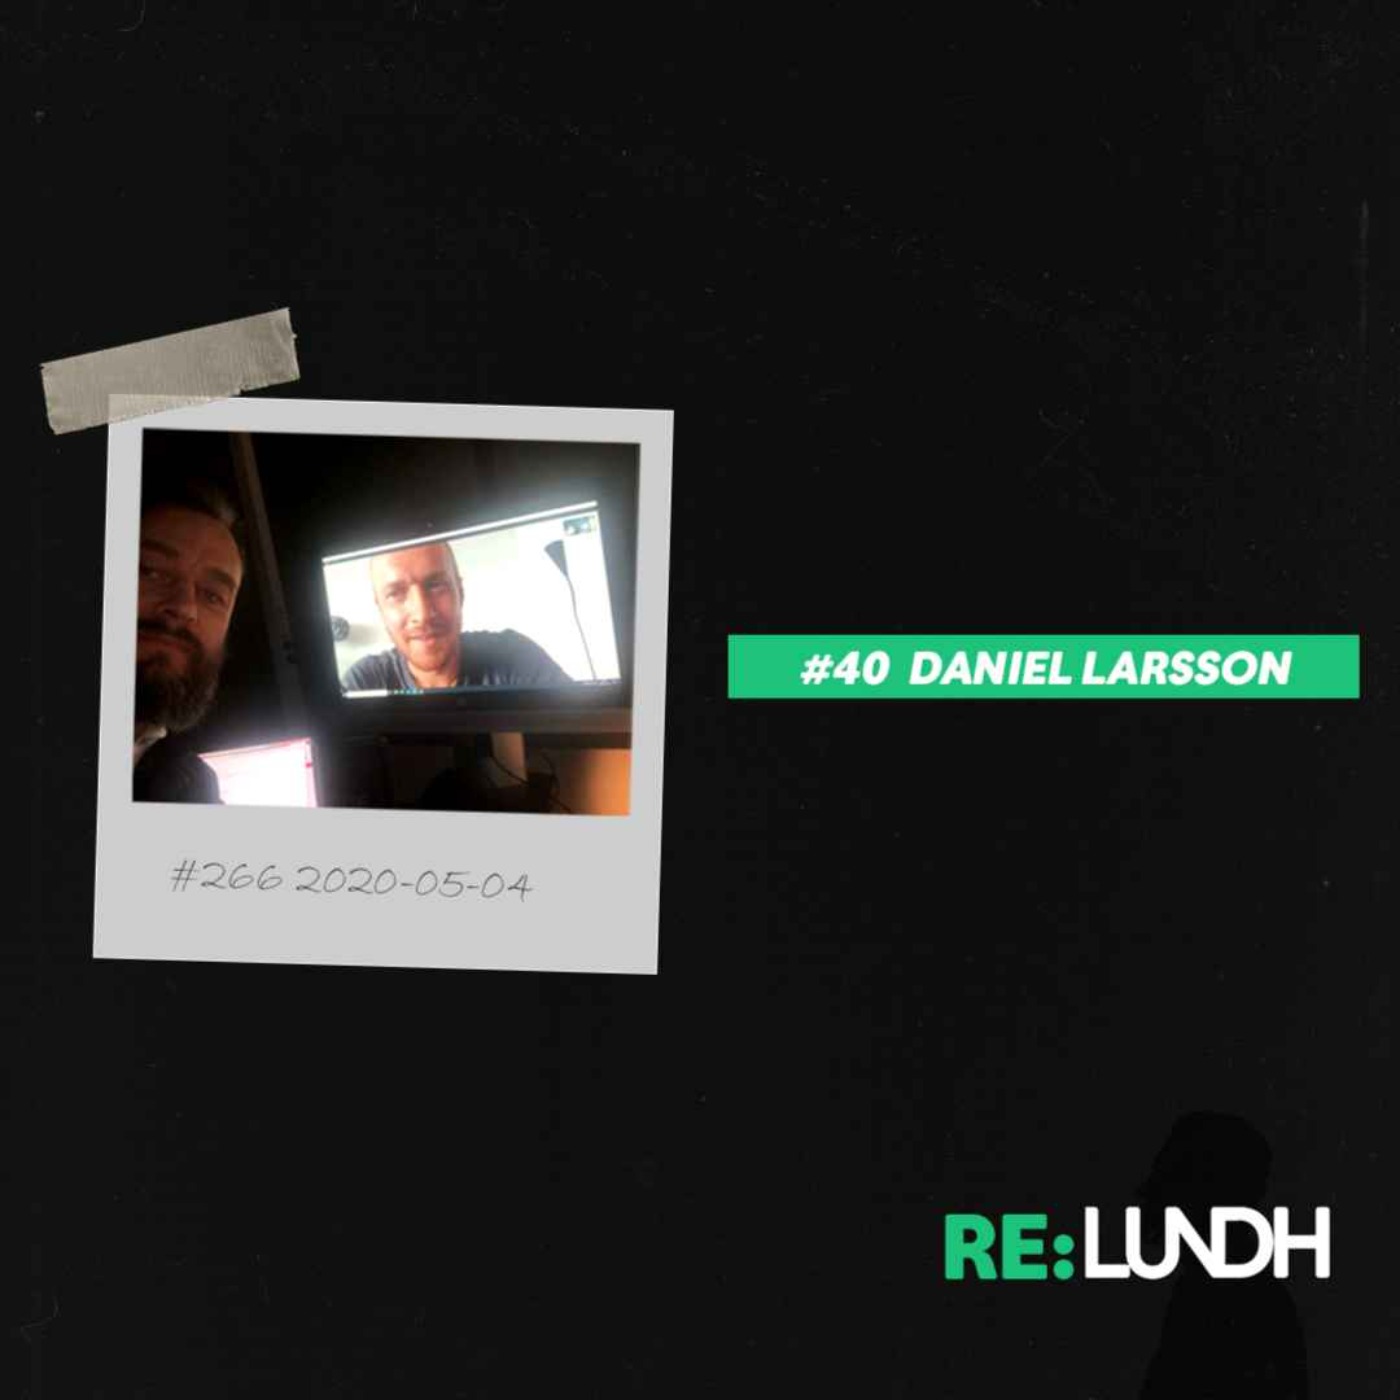 40 Re:Lundh - Daniel Larsson